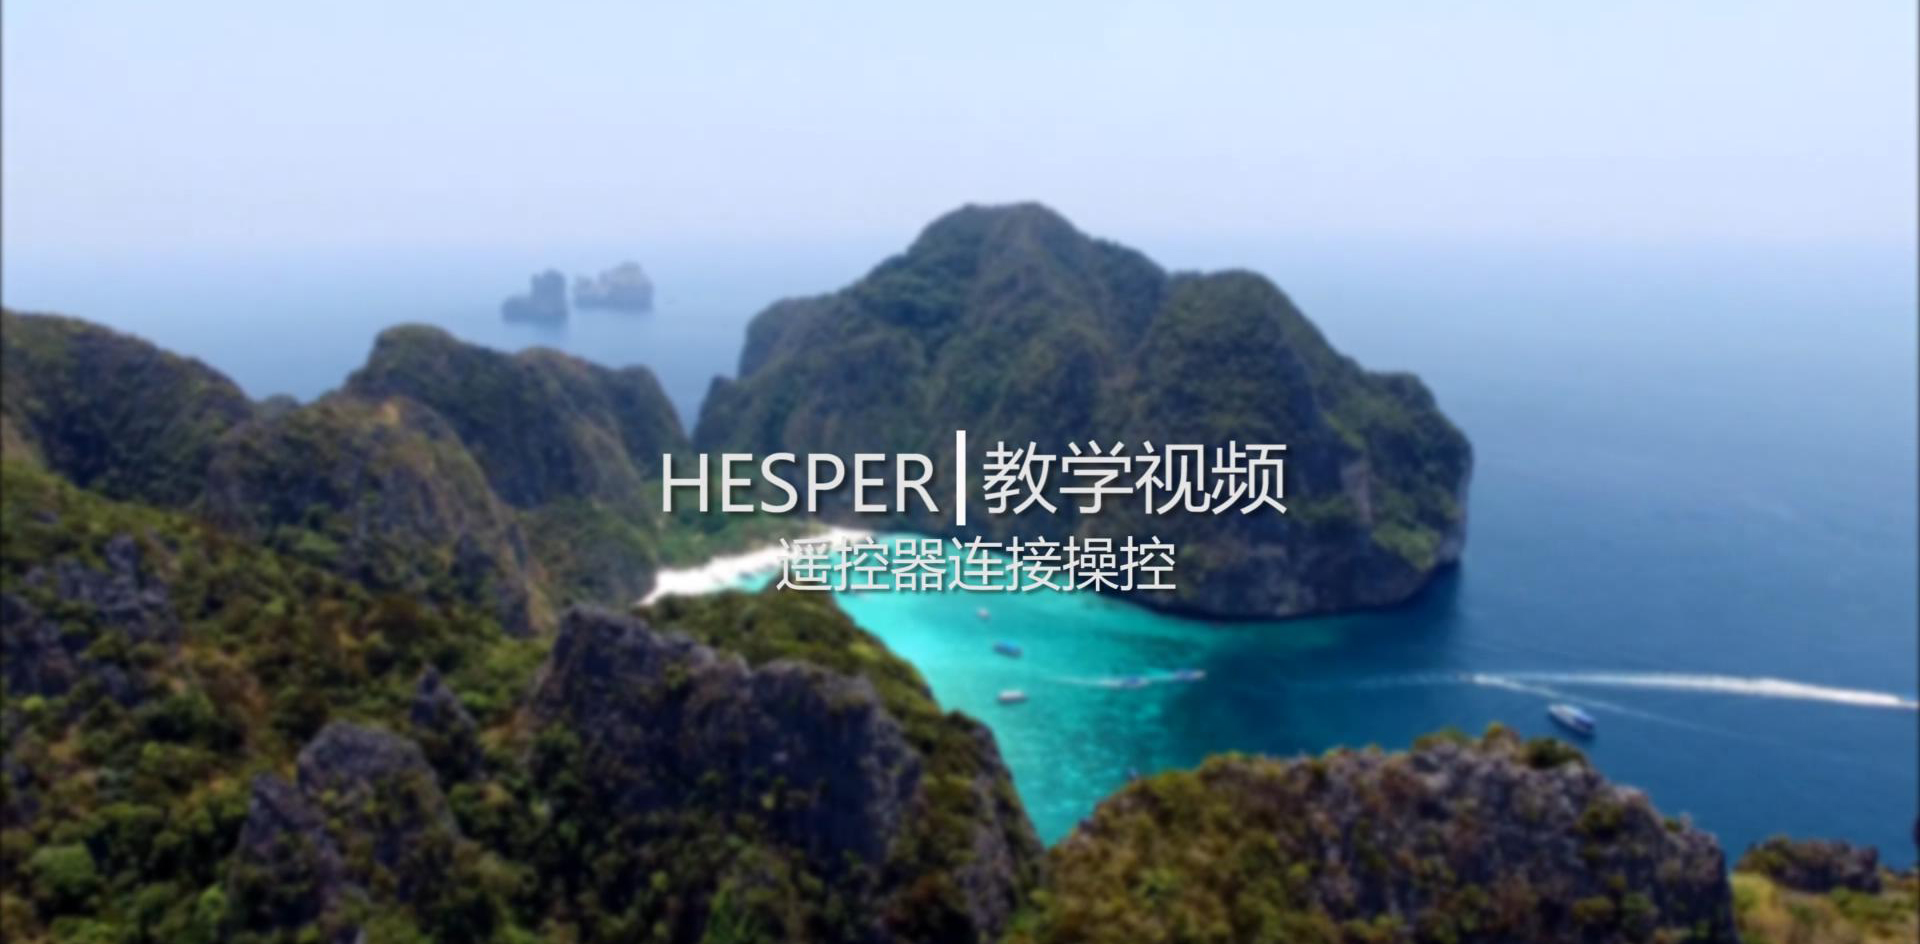 HESPER - 遙控器版起飛前準備